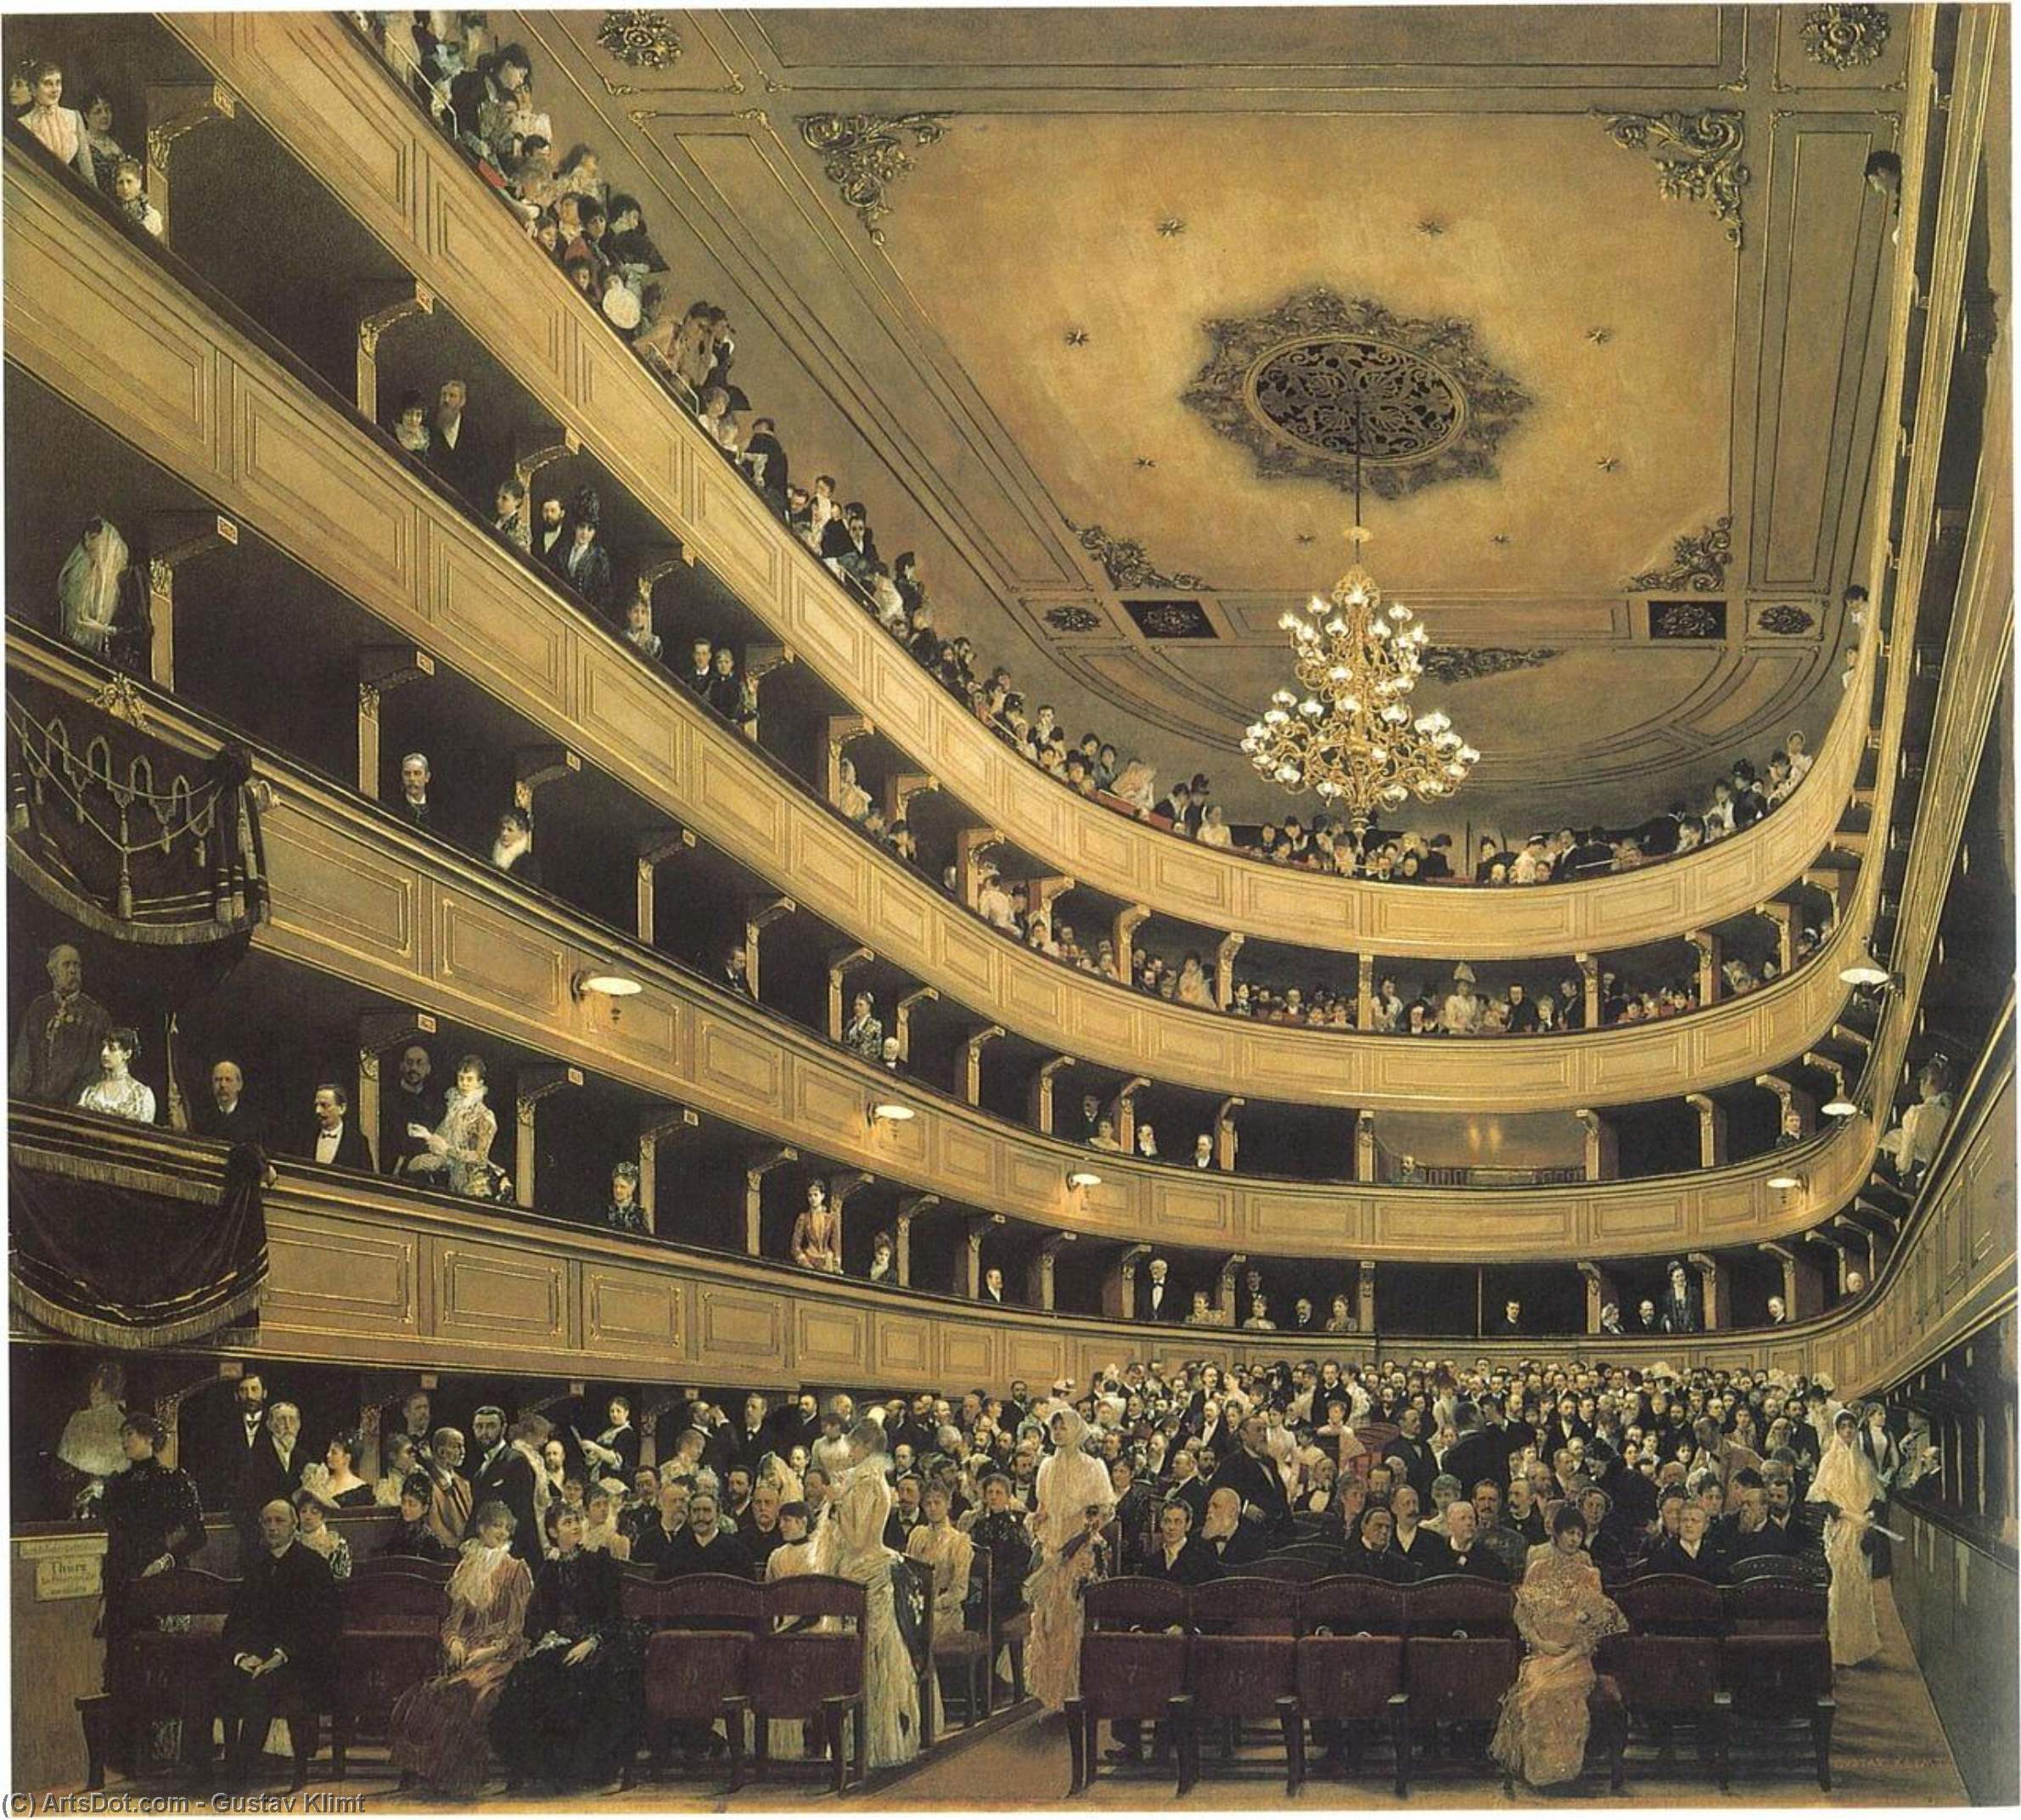 WikiOO.org - Encyclopedia of Fine Arts - Malba, Artwork Gustav Klimt - Auditoriumin the Old Burgtheater, Vienna